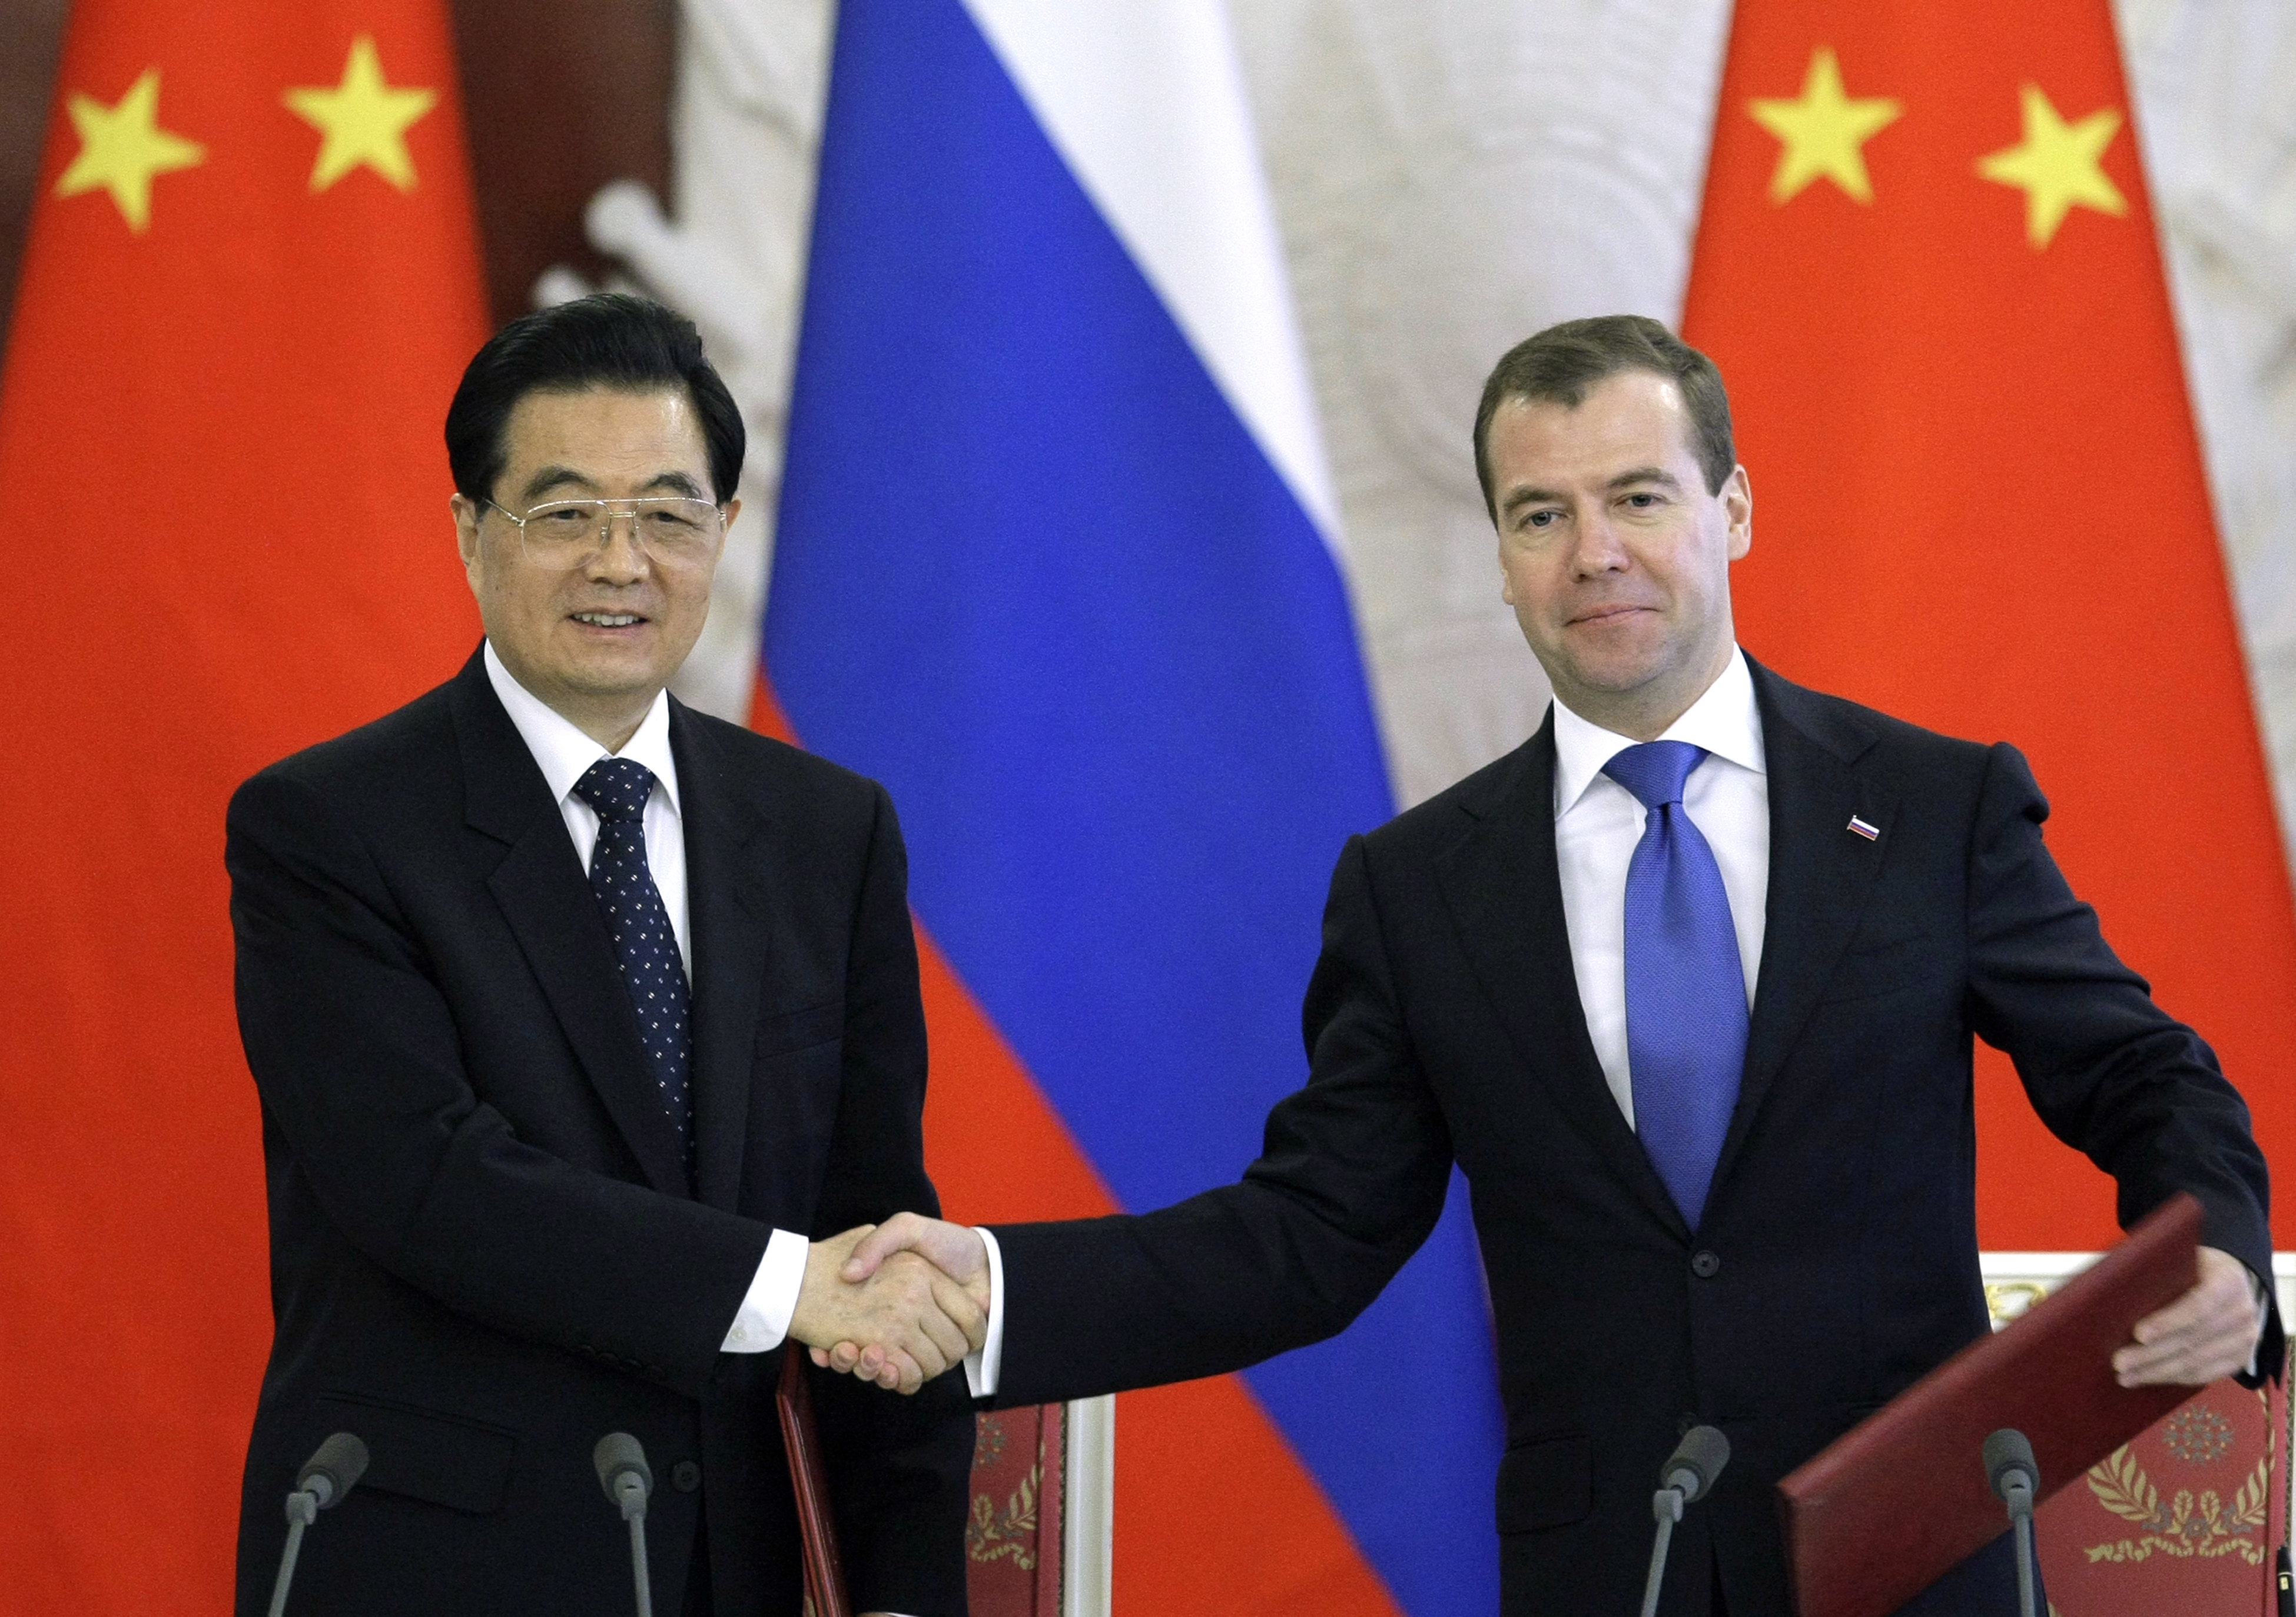 Glada miner när Kinas president Hu Jintao och hans ryske motsvarighet Dmitri Medvedev skakar hand.